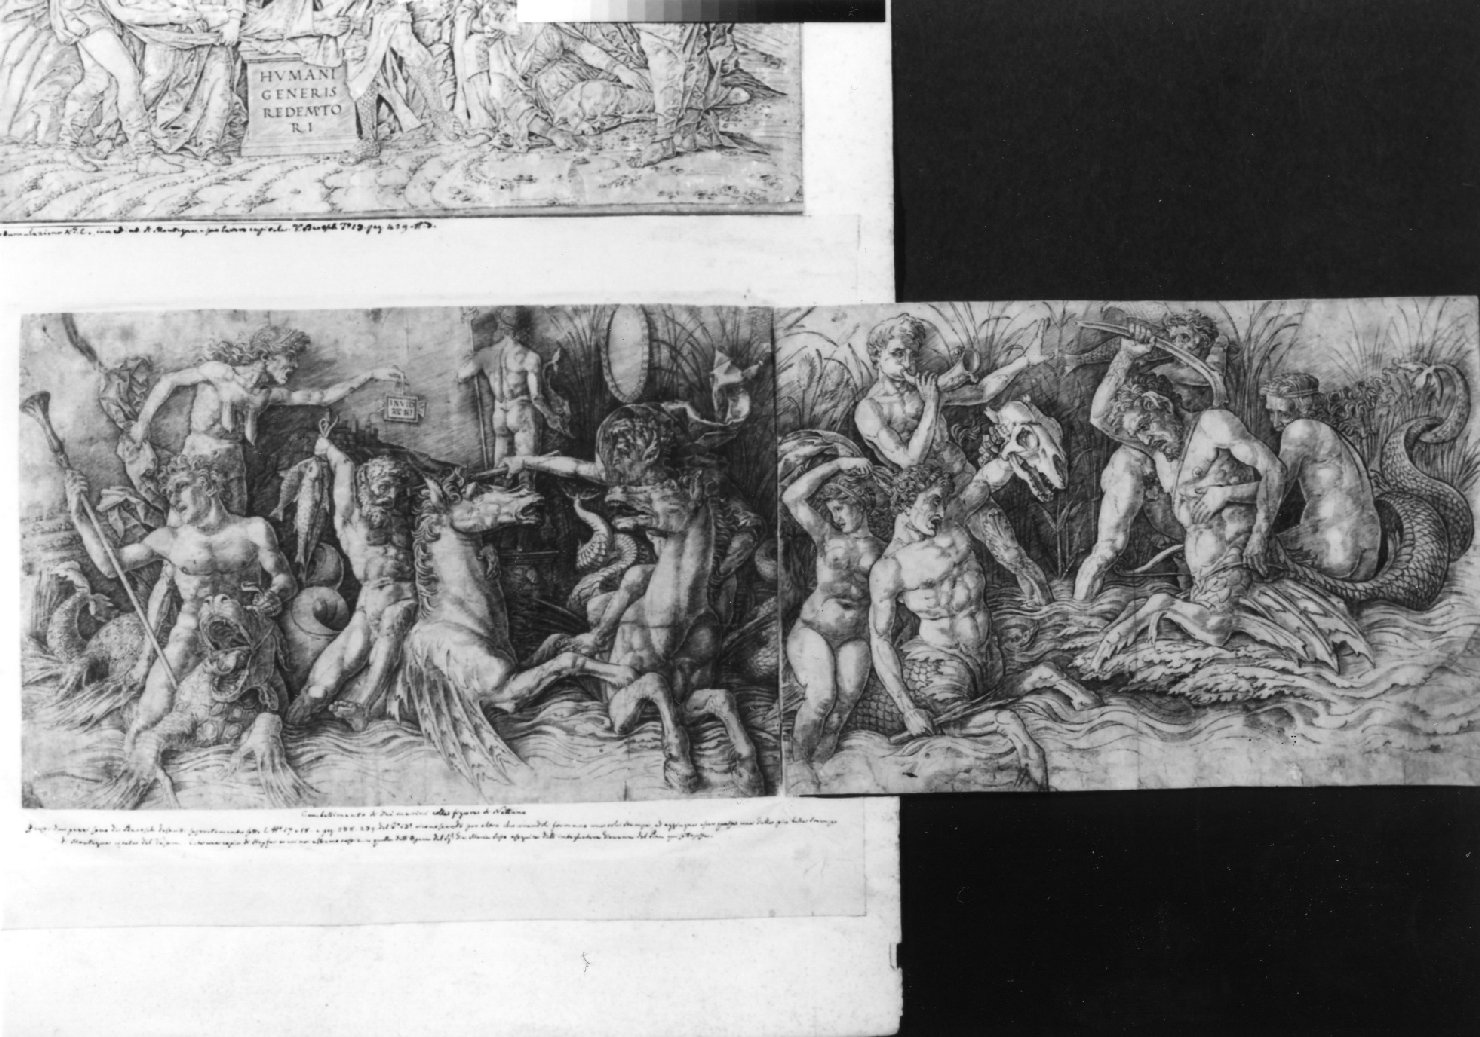 Zuffa di dei marini, Nereidi e tritoni (stampa smarginata, stampa composita) di Mantegna Andrea (sec. XV)